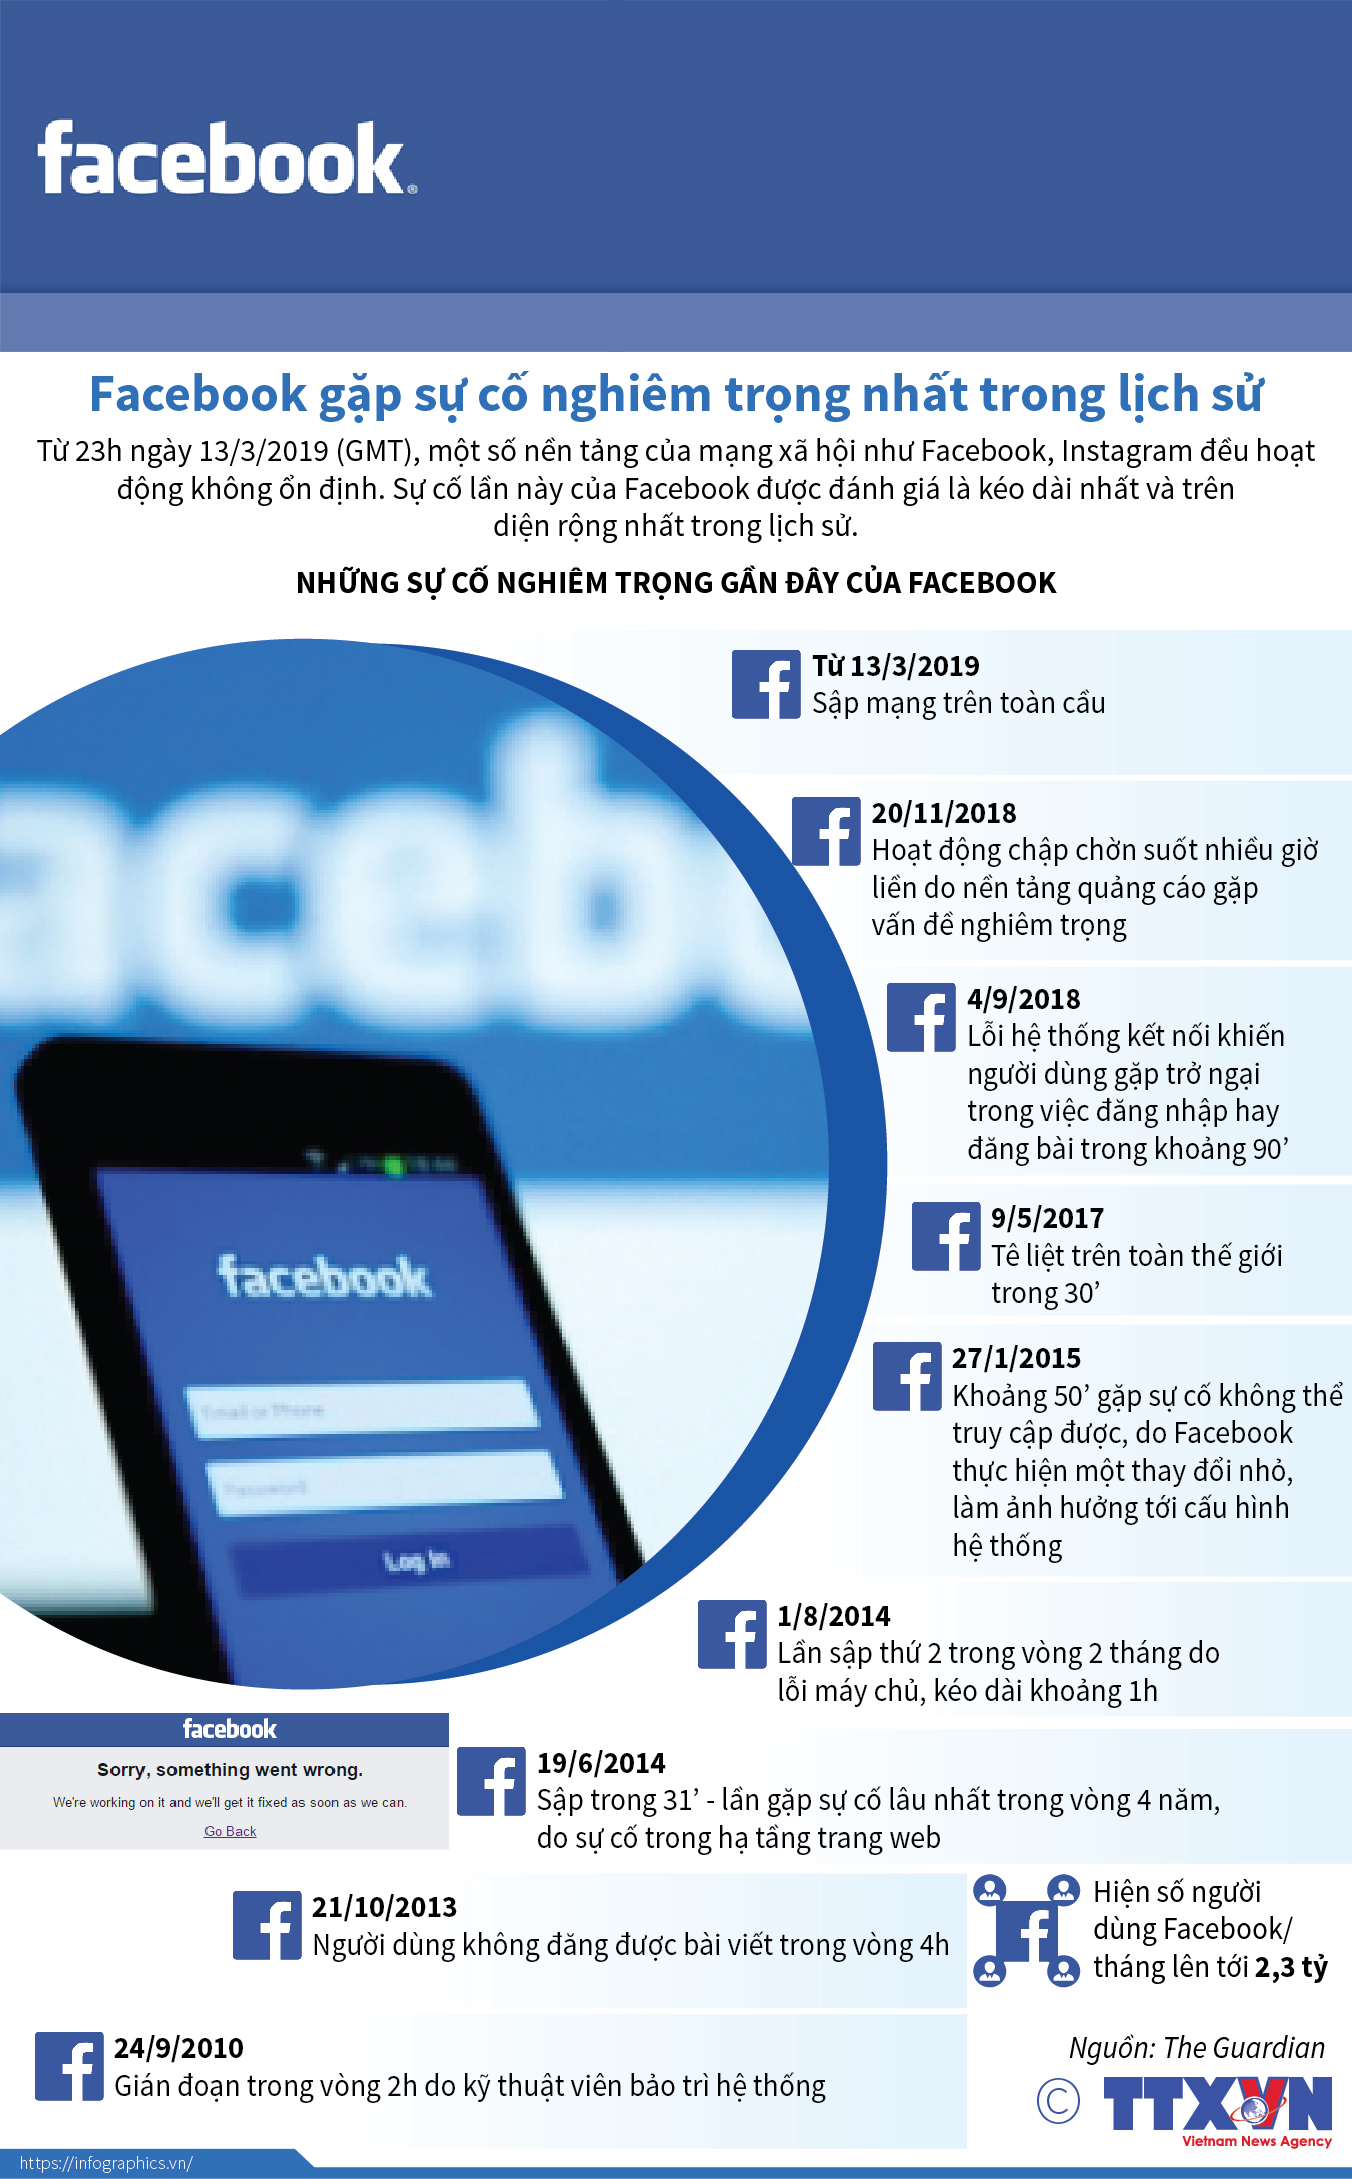 Sự cố Facebook: Dù đã xảy ra sự cố về bảo mật trên Facebook, nhưng chính phủ và người dùng đã nhanh chóng áp dụng các biện pháp nhằm đảm bảo an toàn và bảo mật thông tin người dùng. Người dùng cũng đã cảm thấy yên tâm hơn khi được hưởng các chính sách bảo mật tiên tiến của Facebook. Hiện nay, Facebook vẫn là mạng xã hội được yêu thích và sử dụng rộng rãi tại Việt Nam.